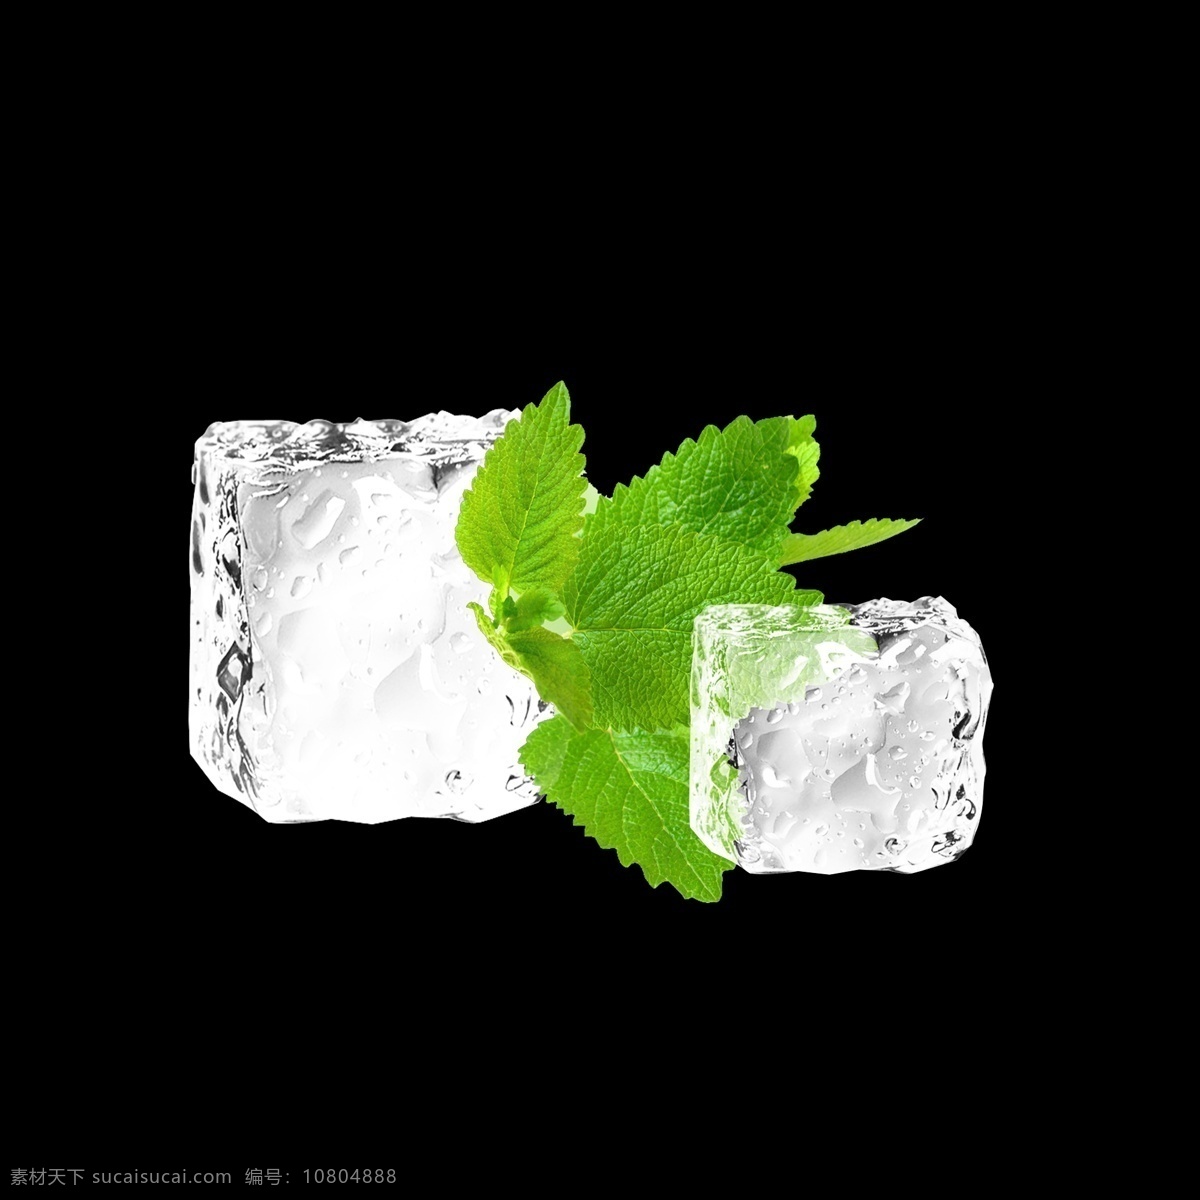 绿叶 冰块 冰晶 元素 薄荷叶 唯美冰块 冰 不规则图形 绿色树叶 几何冰晶 几何冰晶冰块